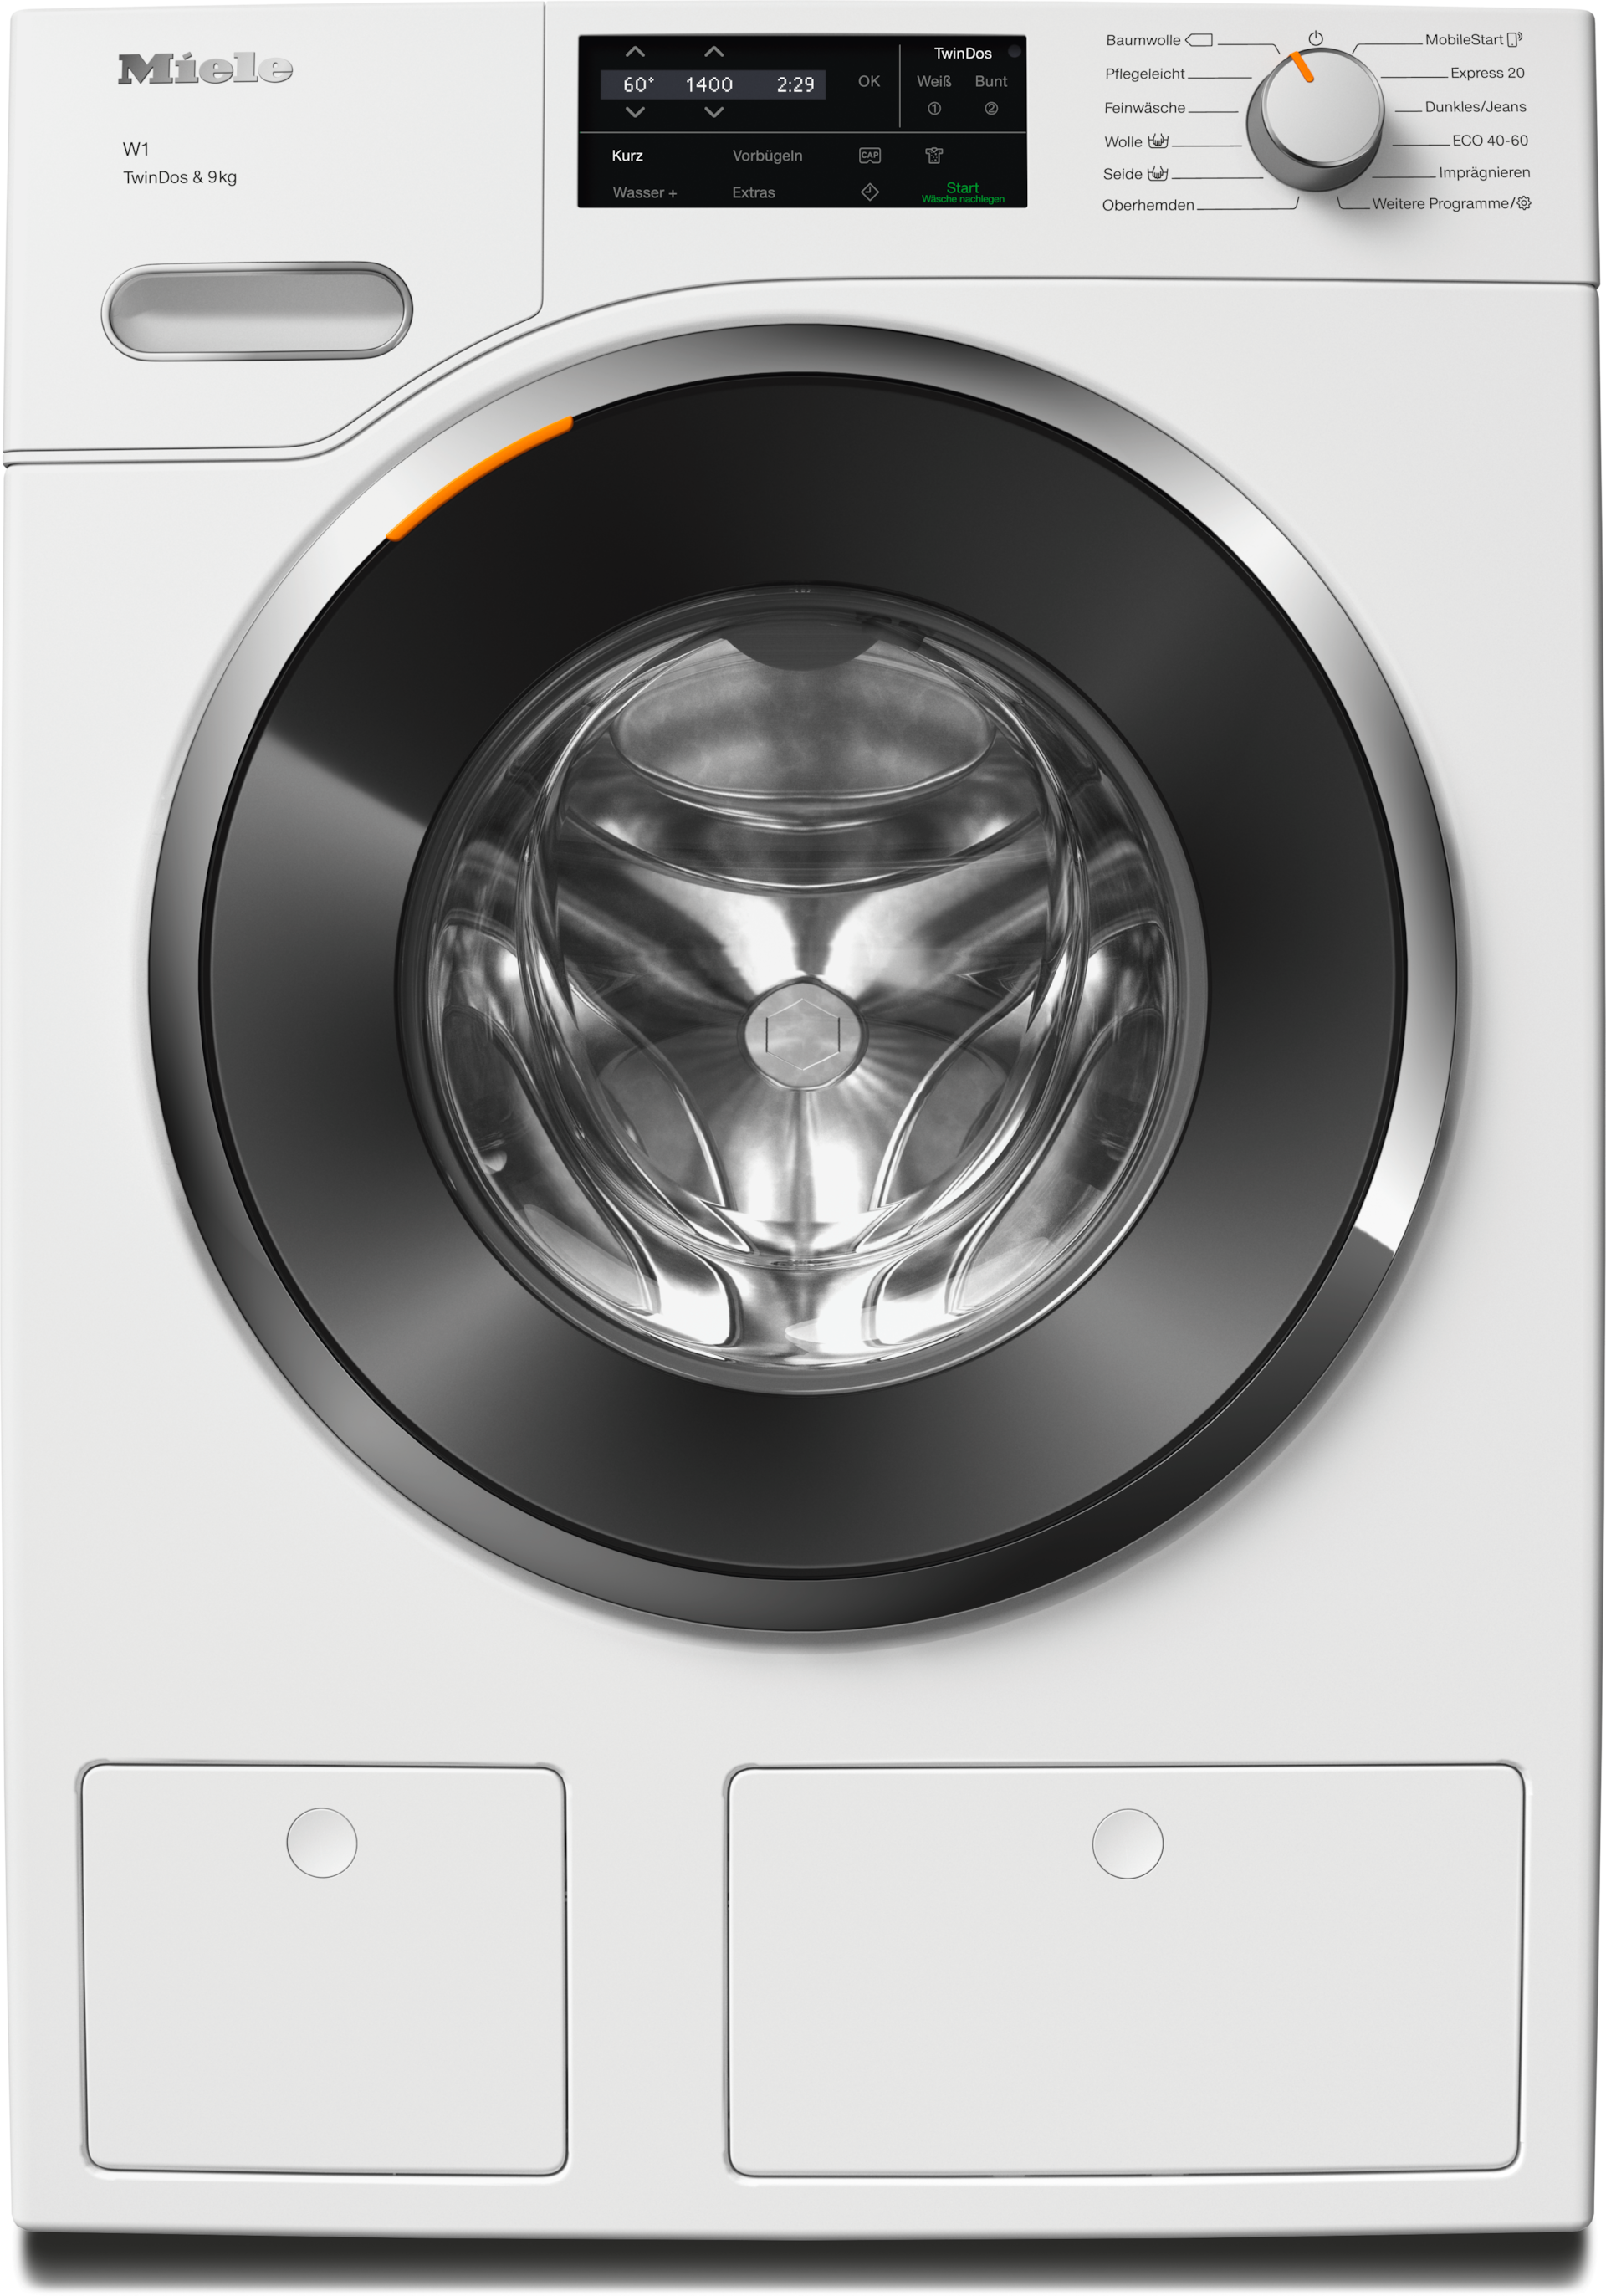 Washing machines - WWG660 WCS TDos&9kg Lopoč bijela - 1